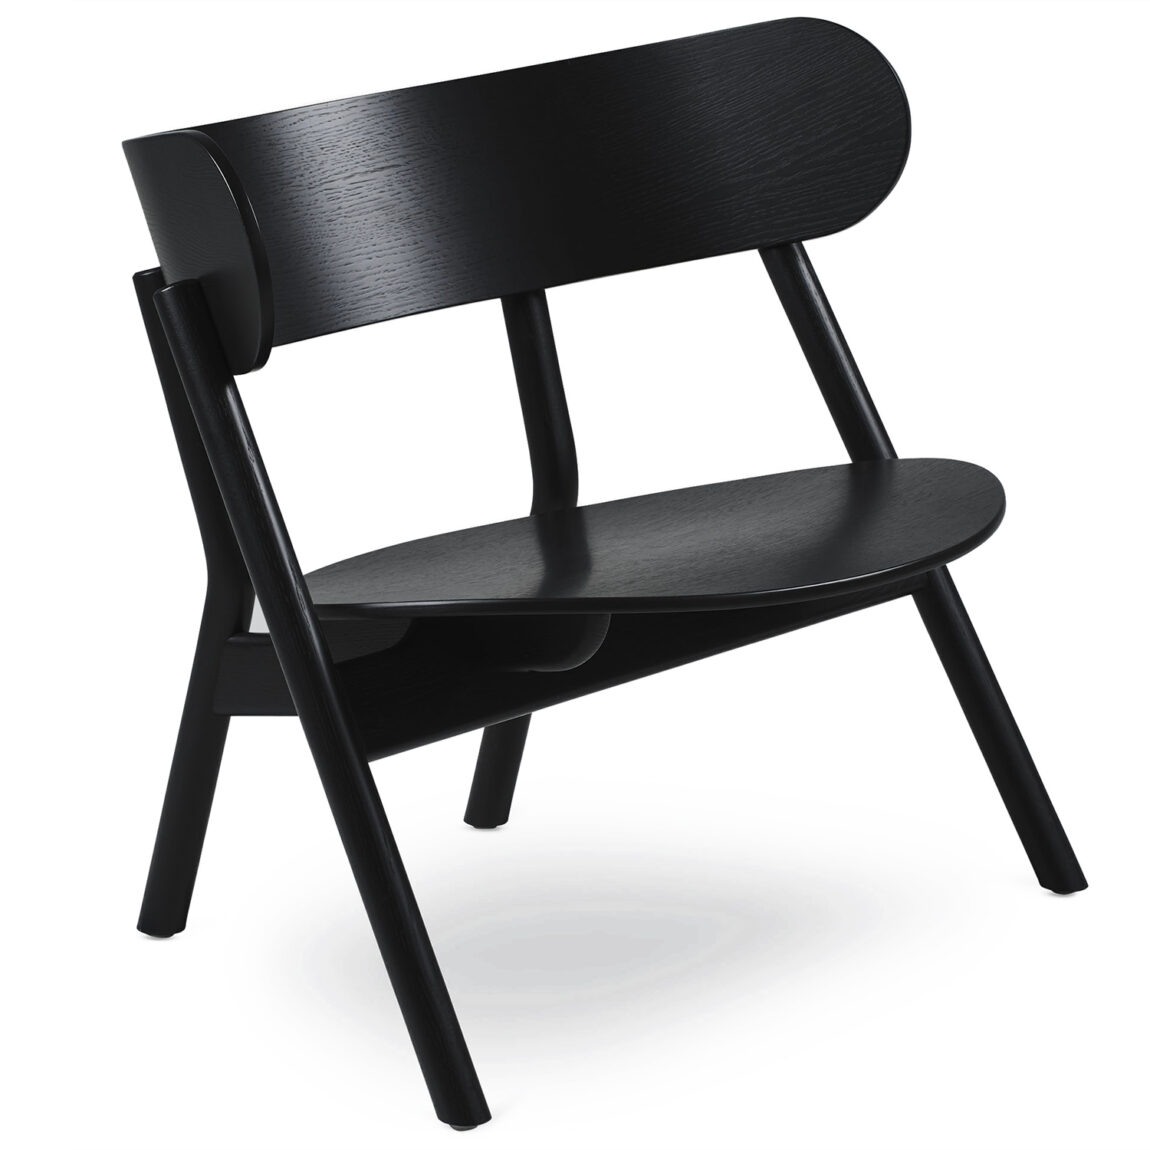 Northern designové židle Oaki